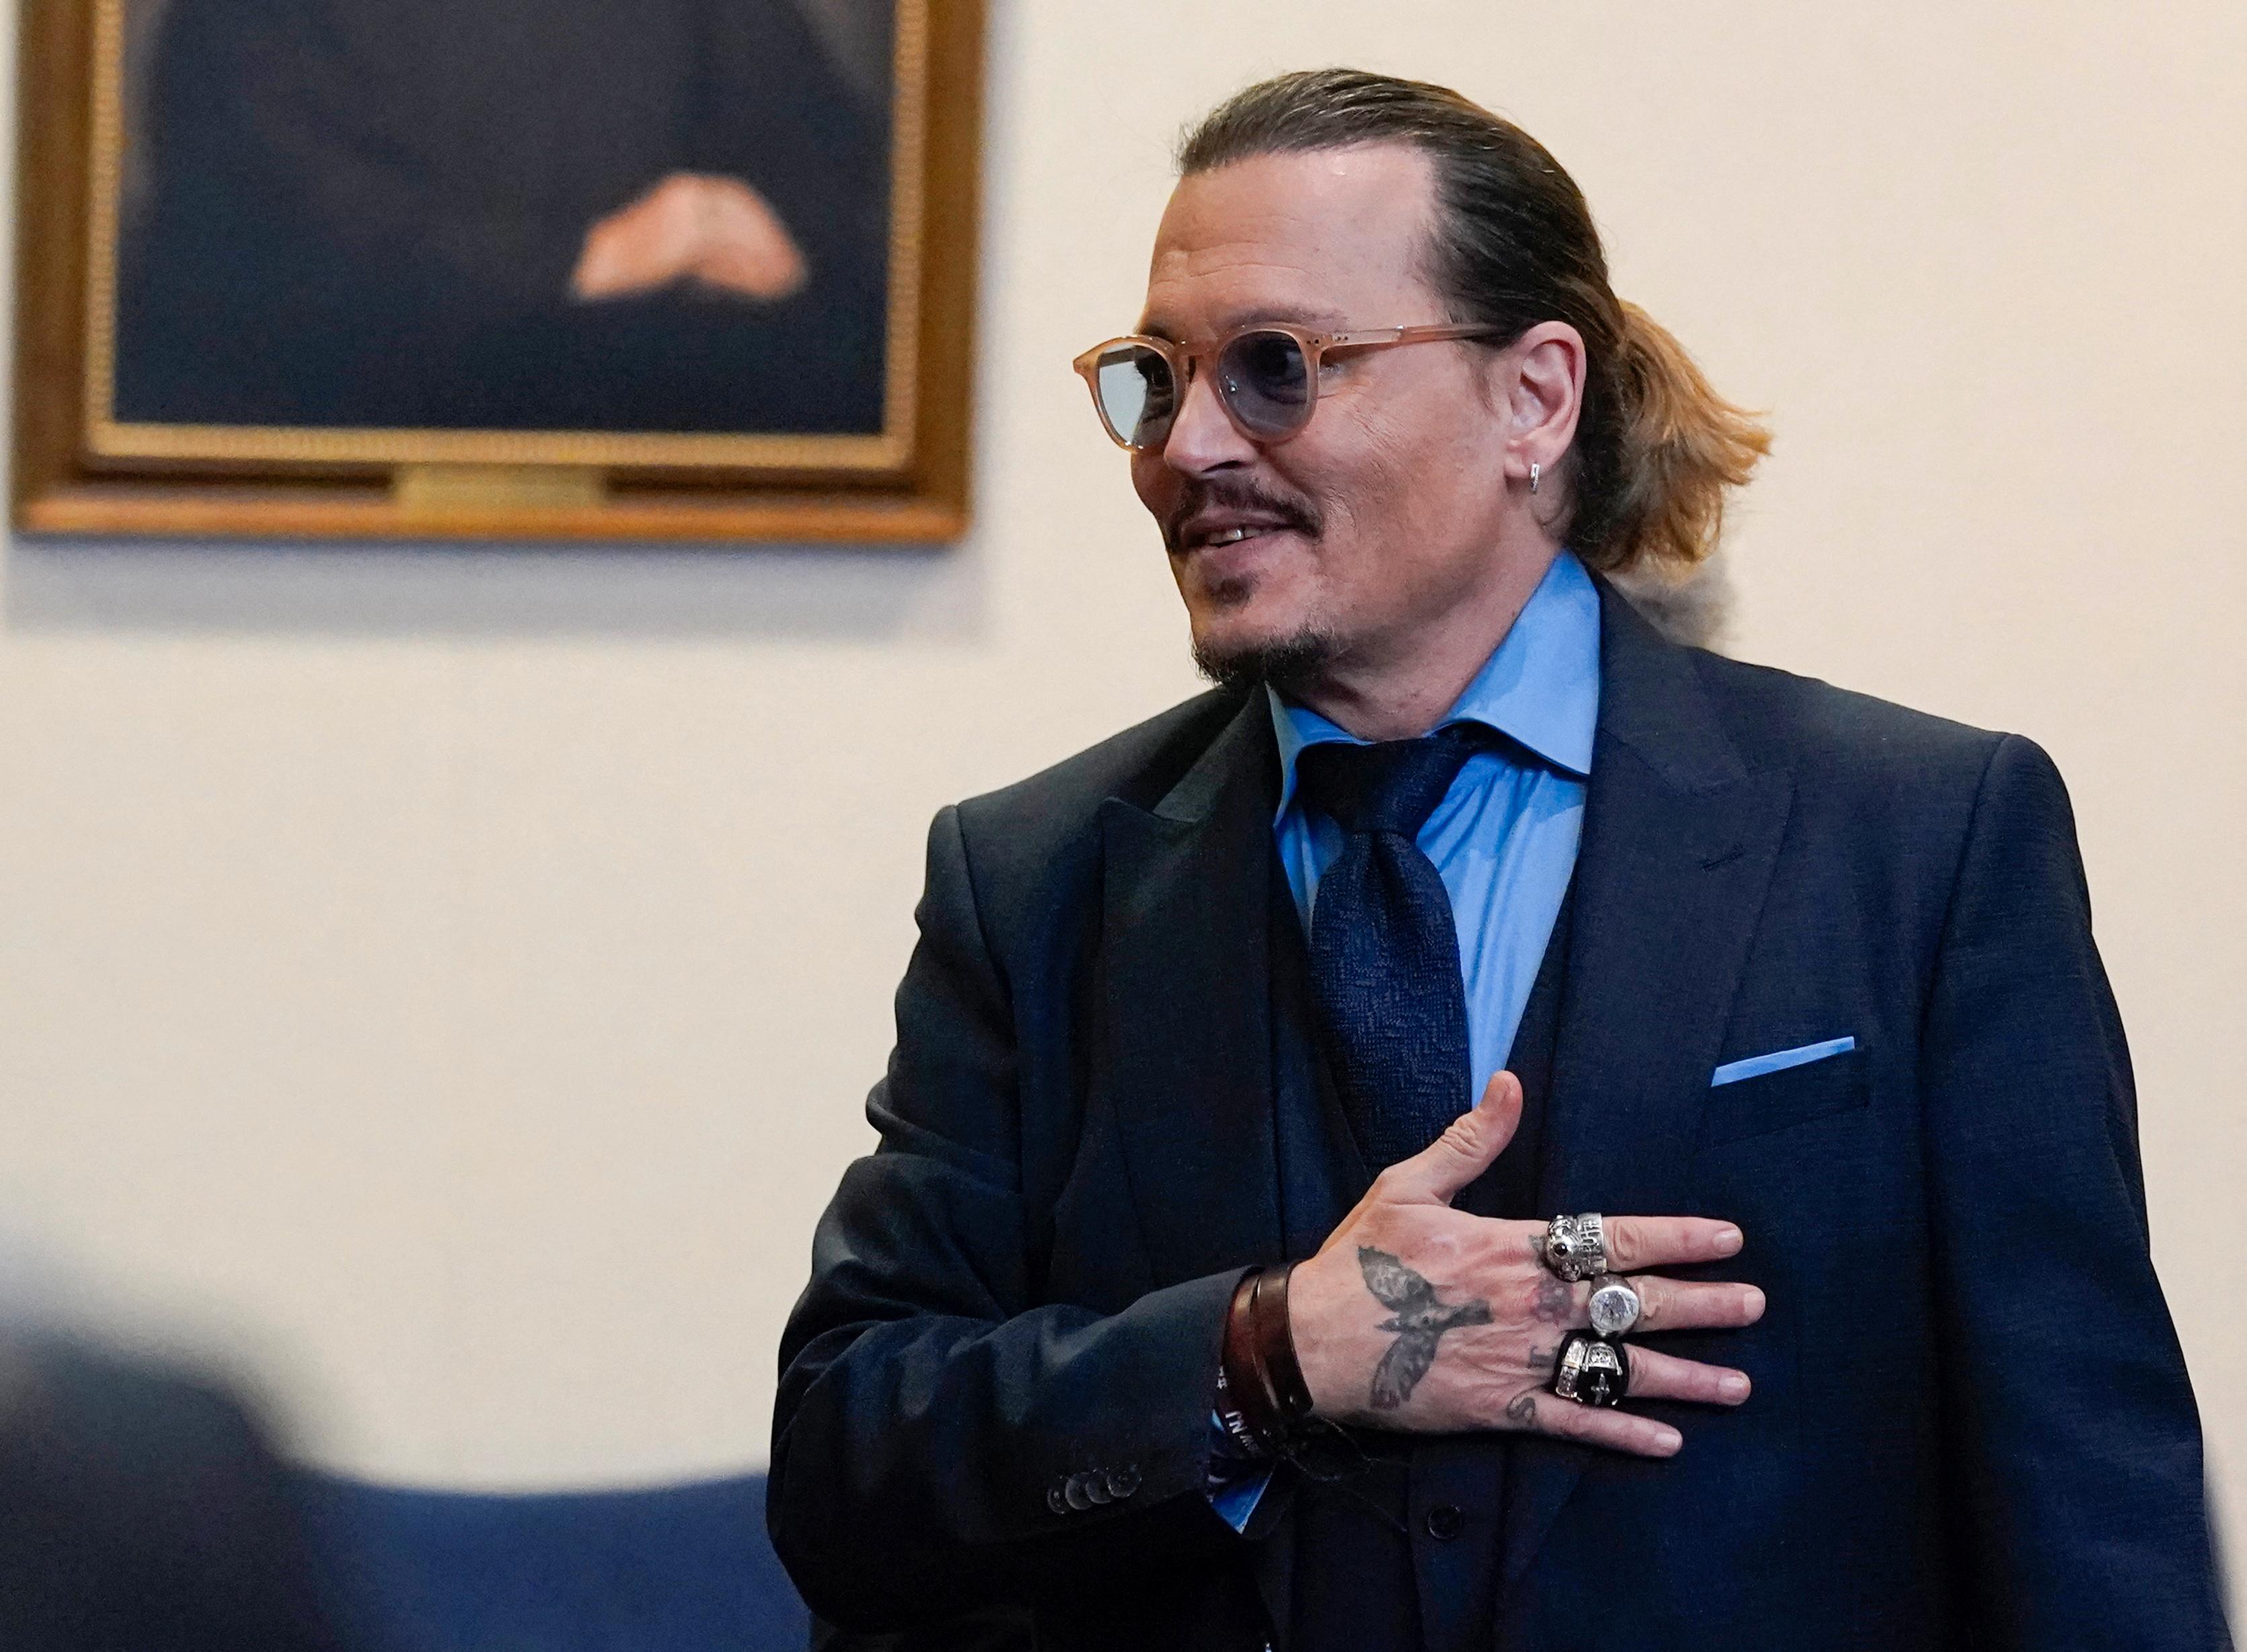 VANT: Johnny Depp vant i retten over Amber Heard, som nå må betale han over 10 millioner dollar i erstatning.  